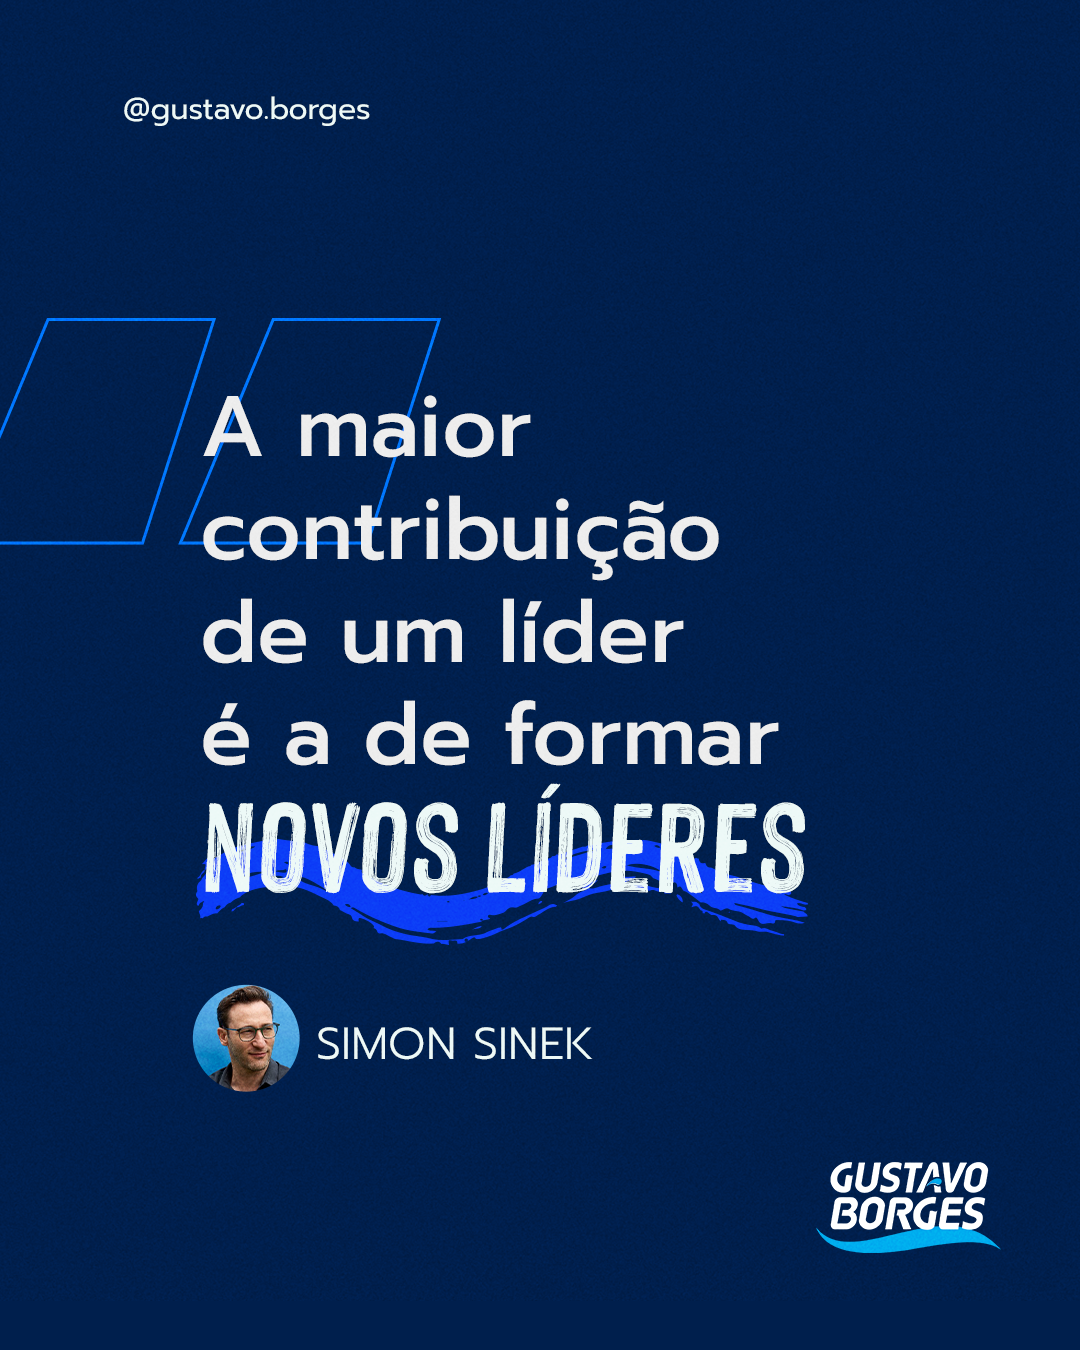 Frase de Simon Sinek: "A maior contribuição de um líder é a de formar novos líderes"